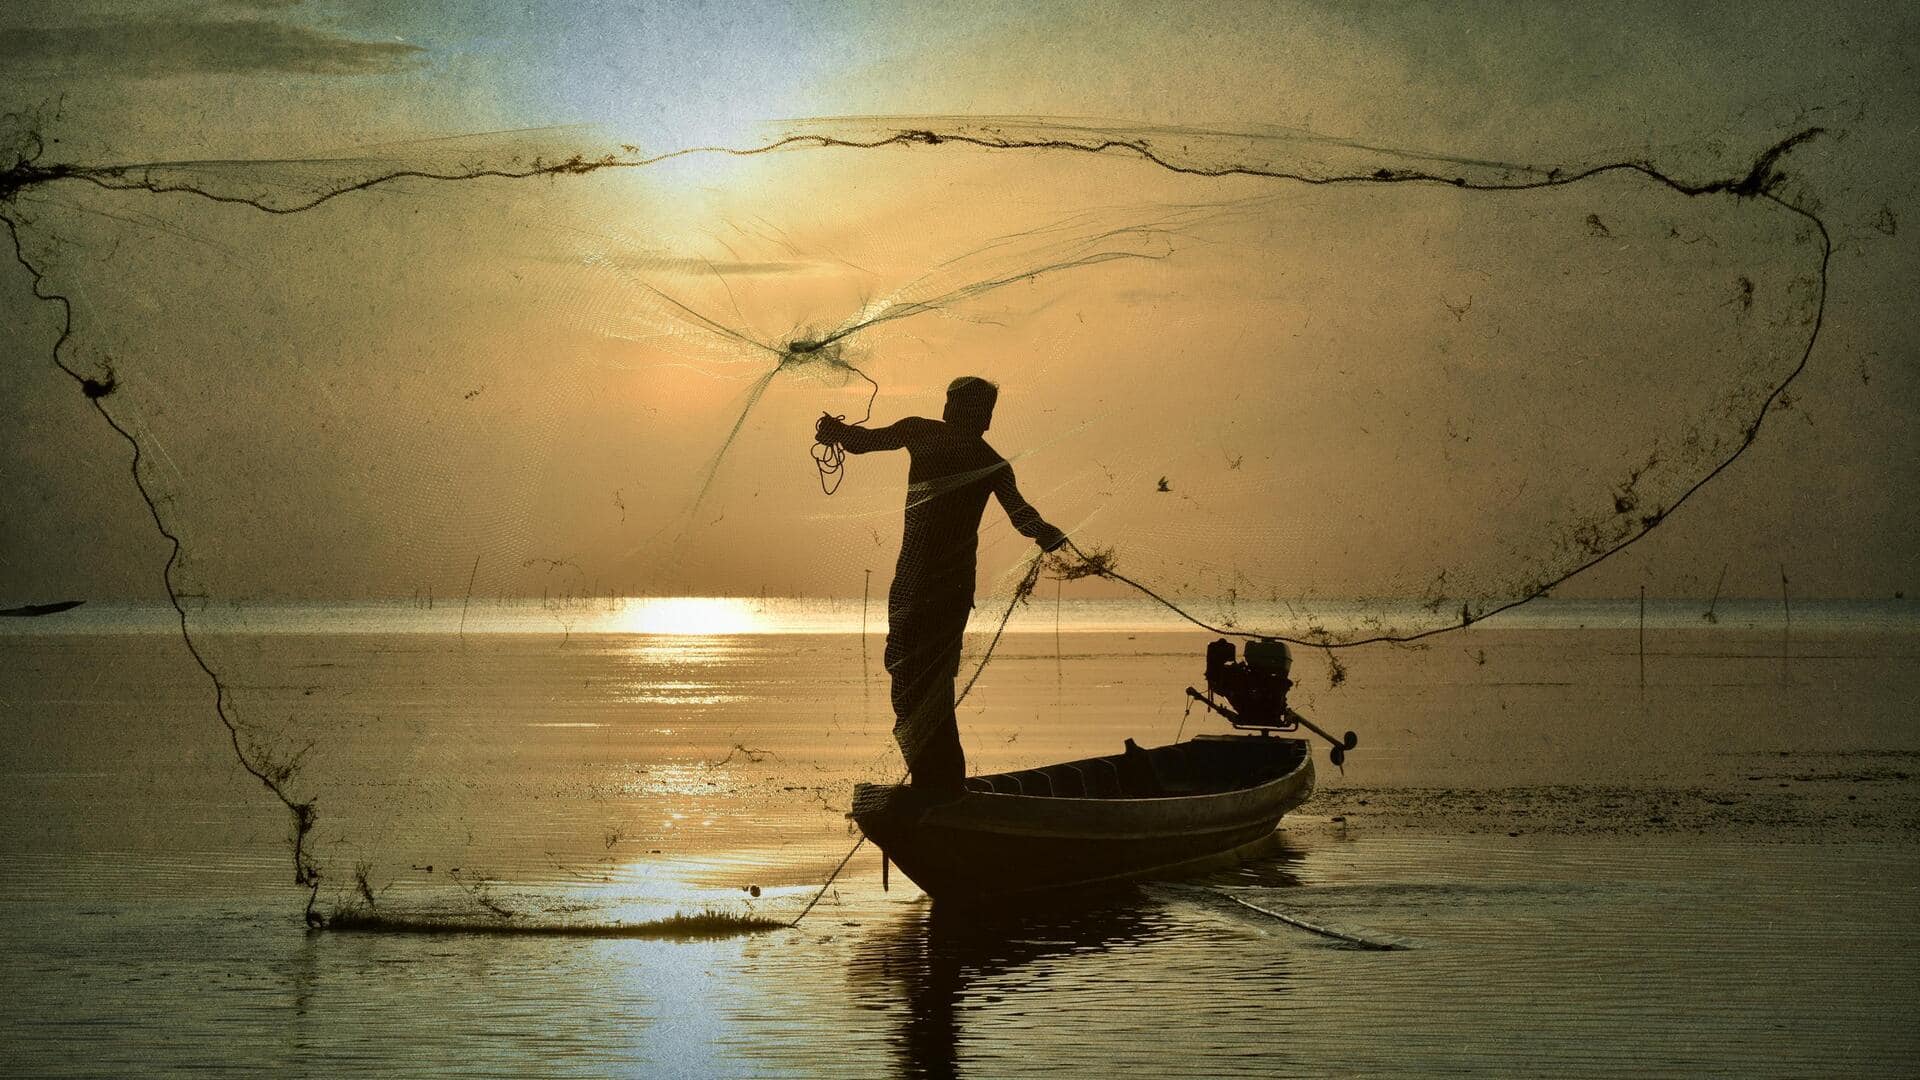 Pak fisherman: అదృష్టం అంటే హాజీదే.. రాత్రికి రాత్రే కోటీశ్వరుడయ్యాడు.. ఎలాగో తెలుసా?